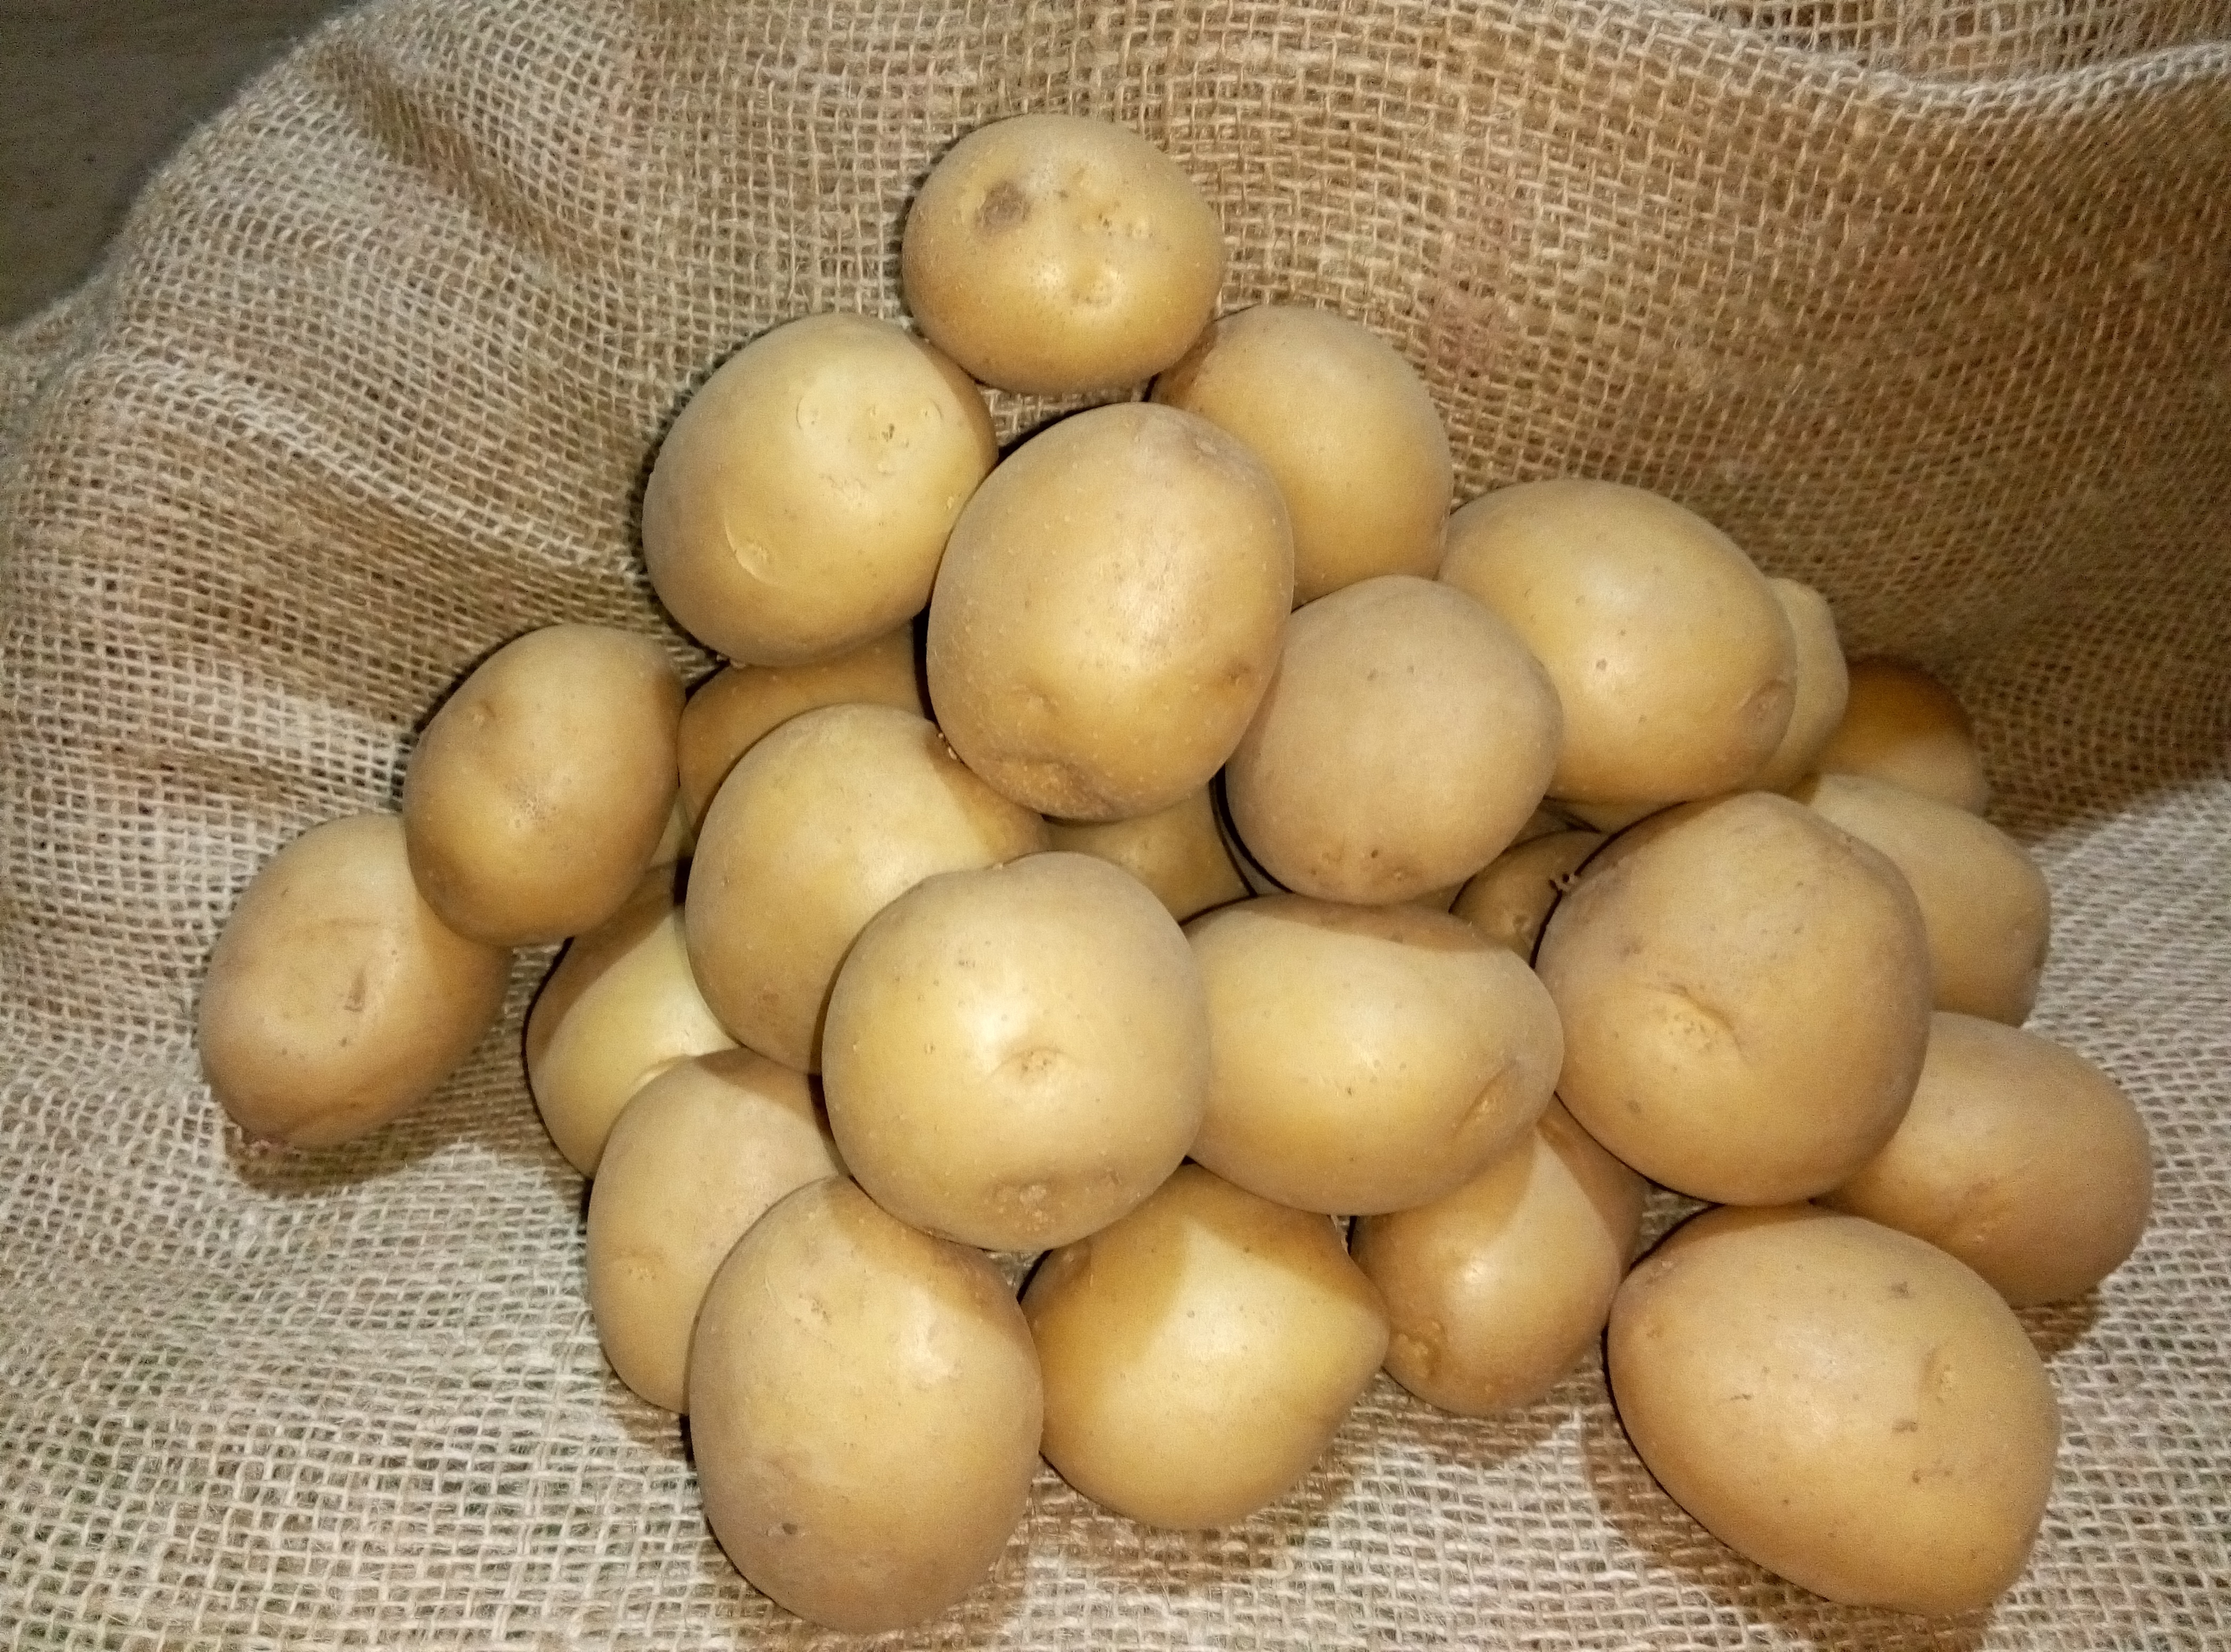 Семенной картофель Ривьера